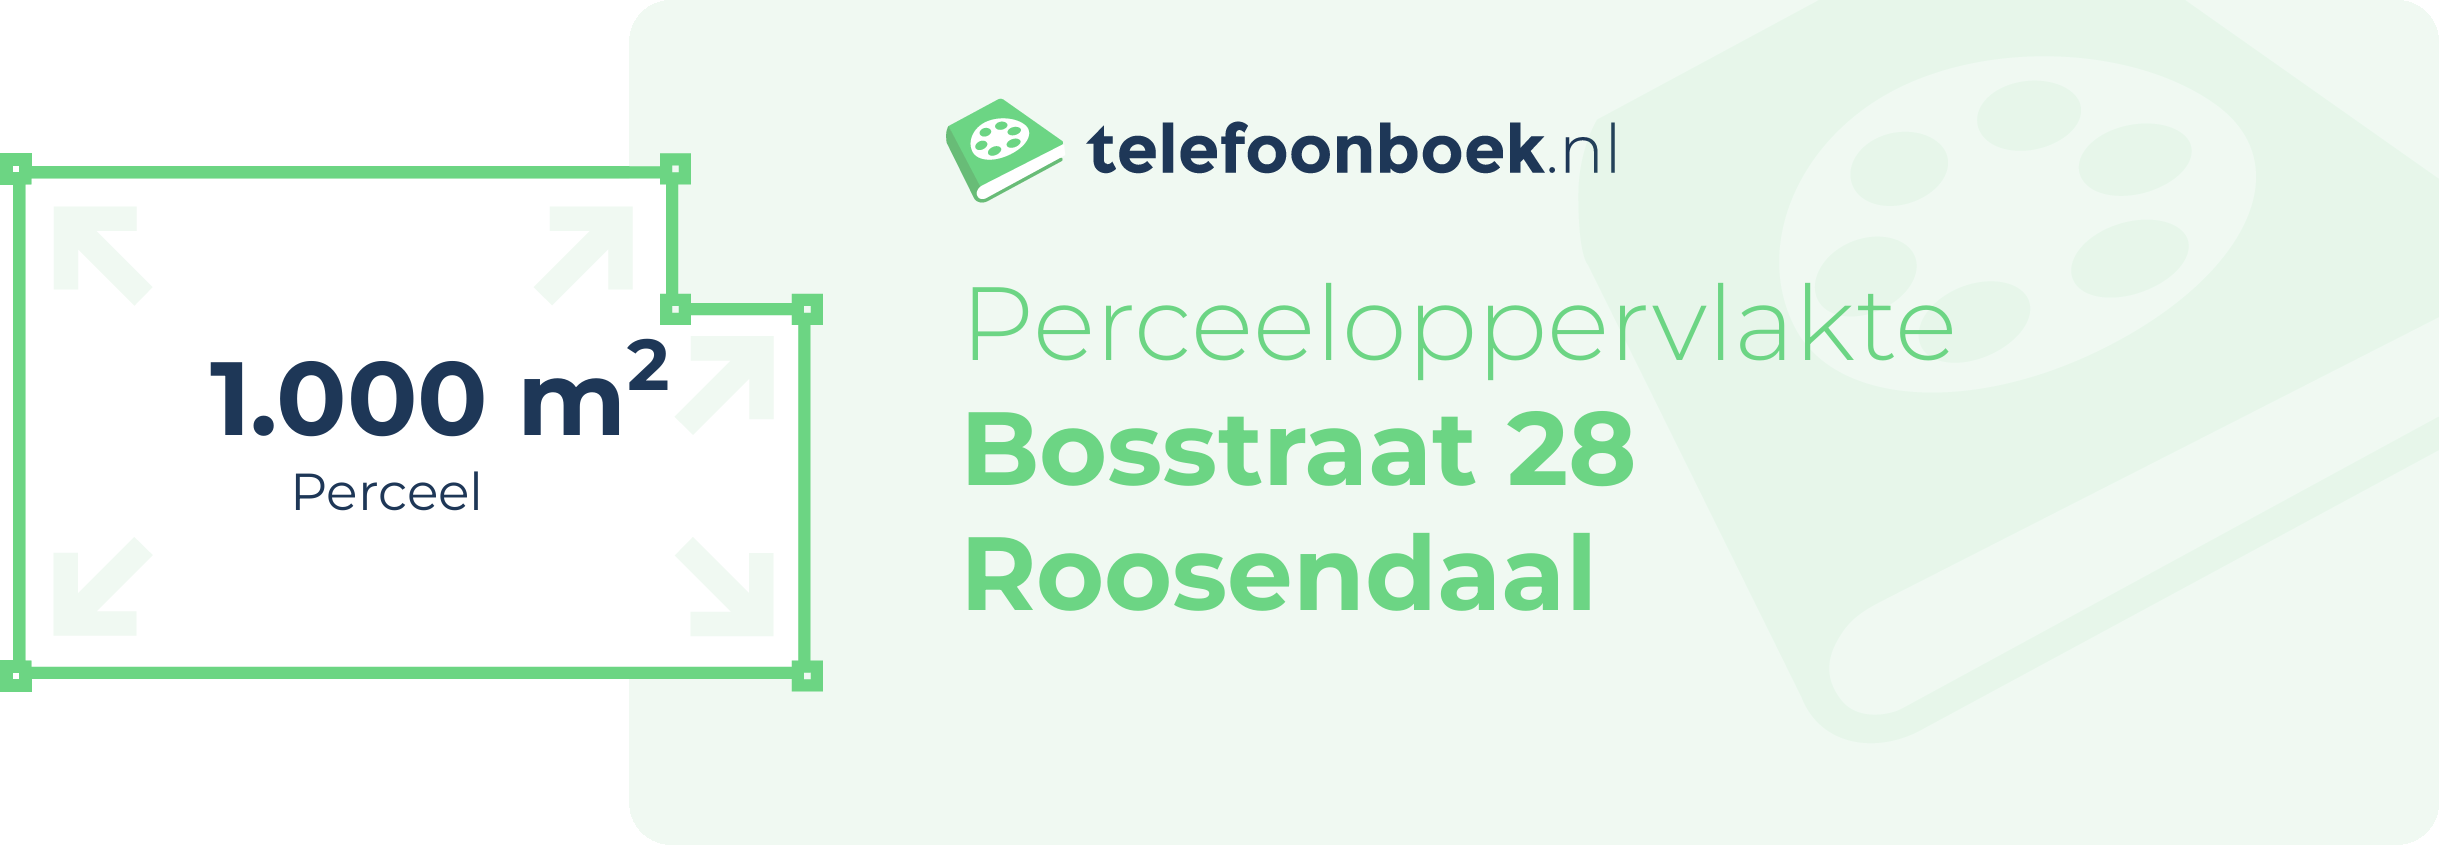 Perceeloppervlakte Bosstraat 28 Roosendaal